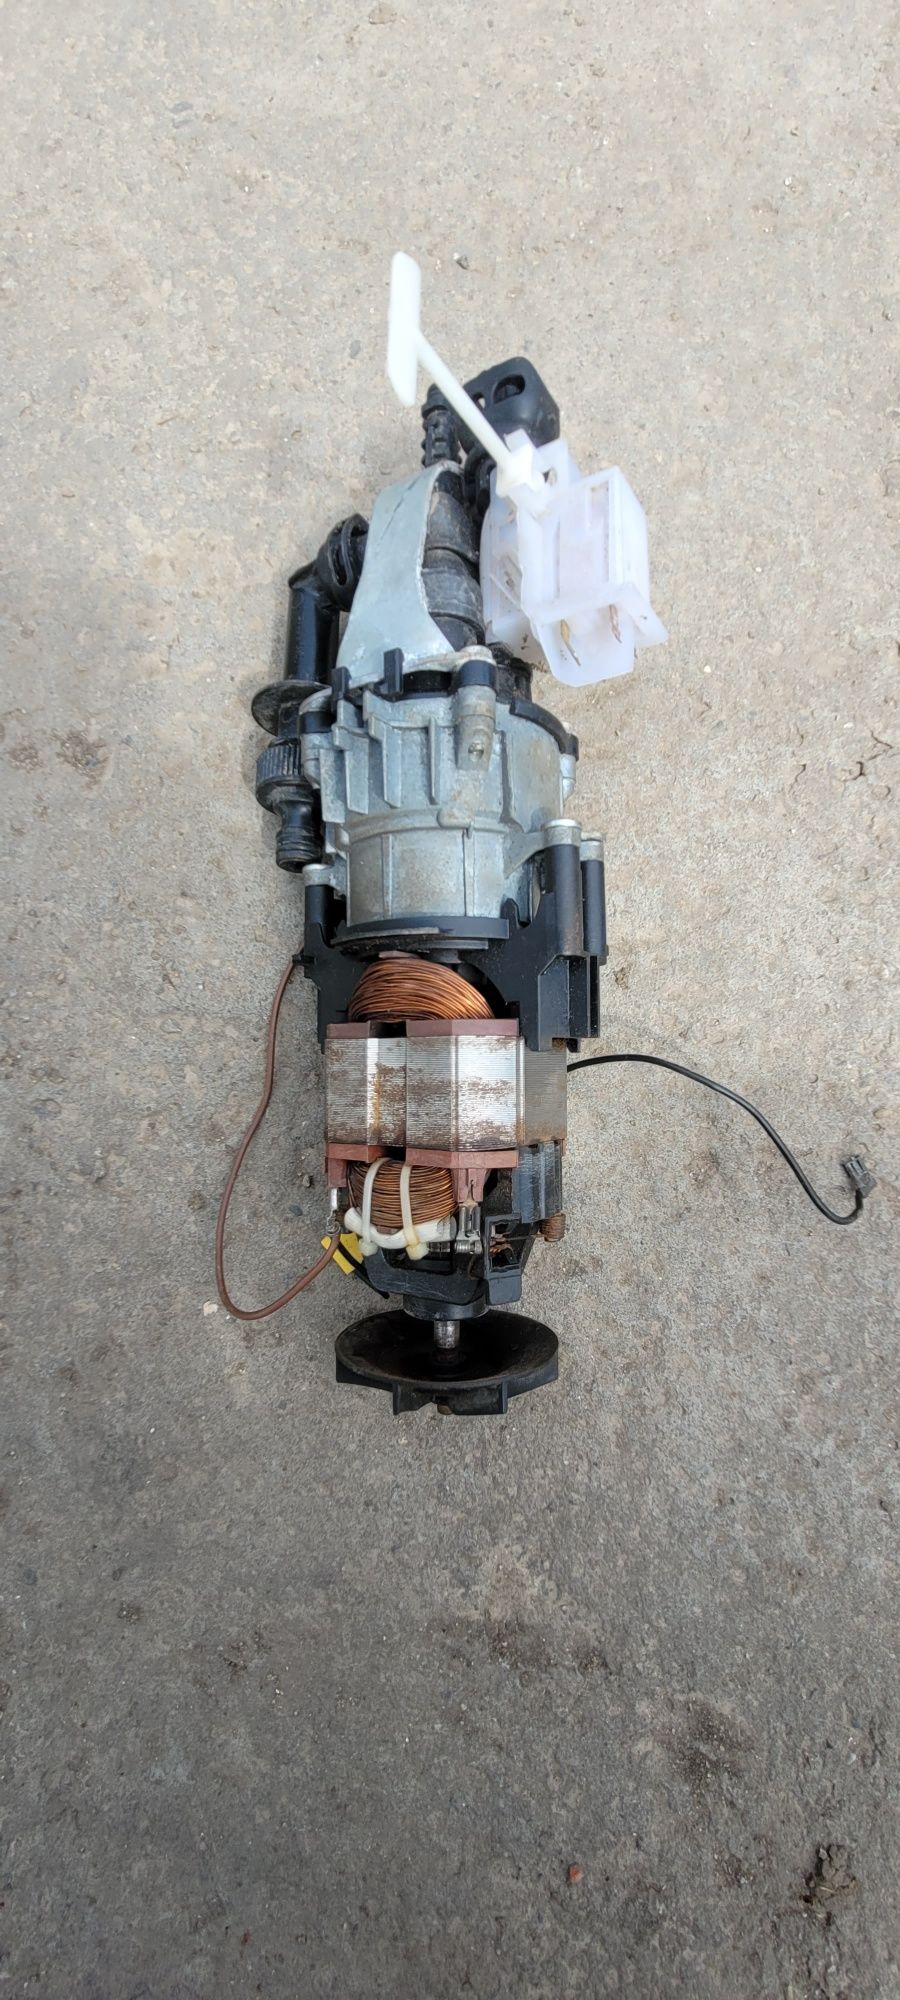 Motor cu pompa karcher de spălat